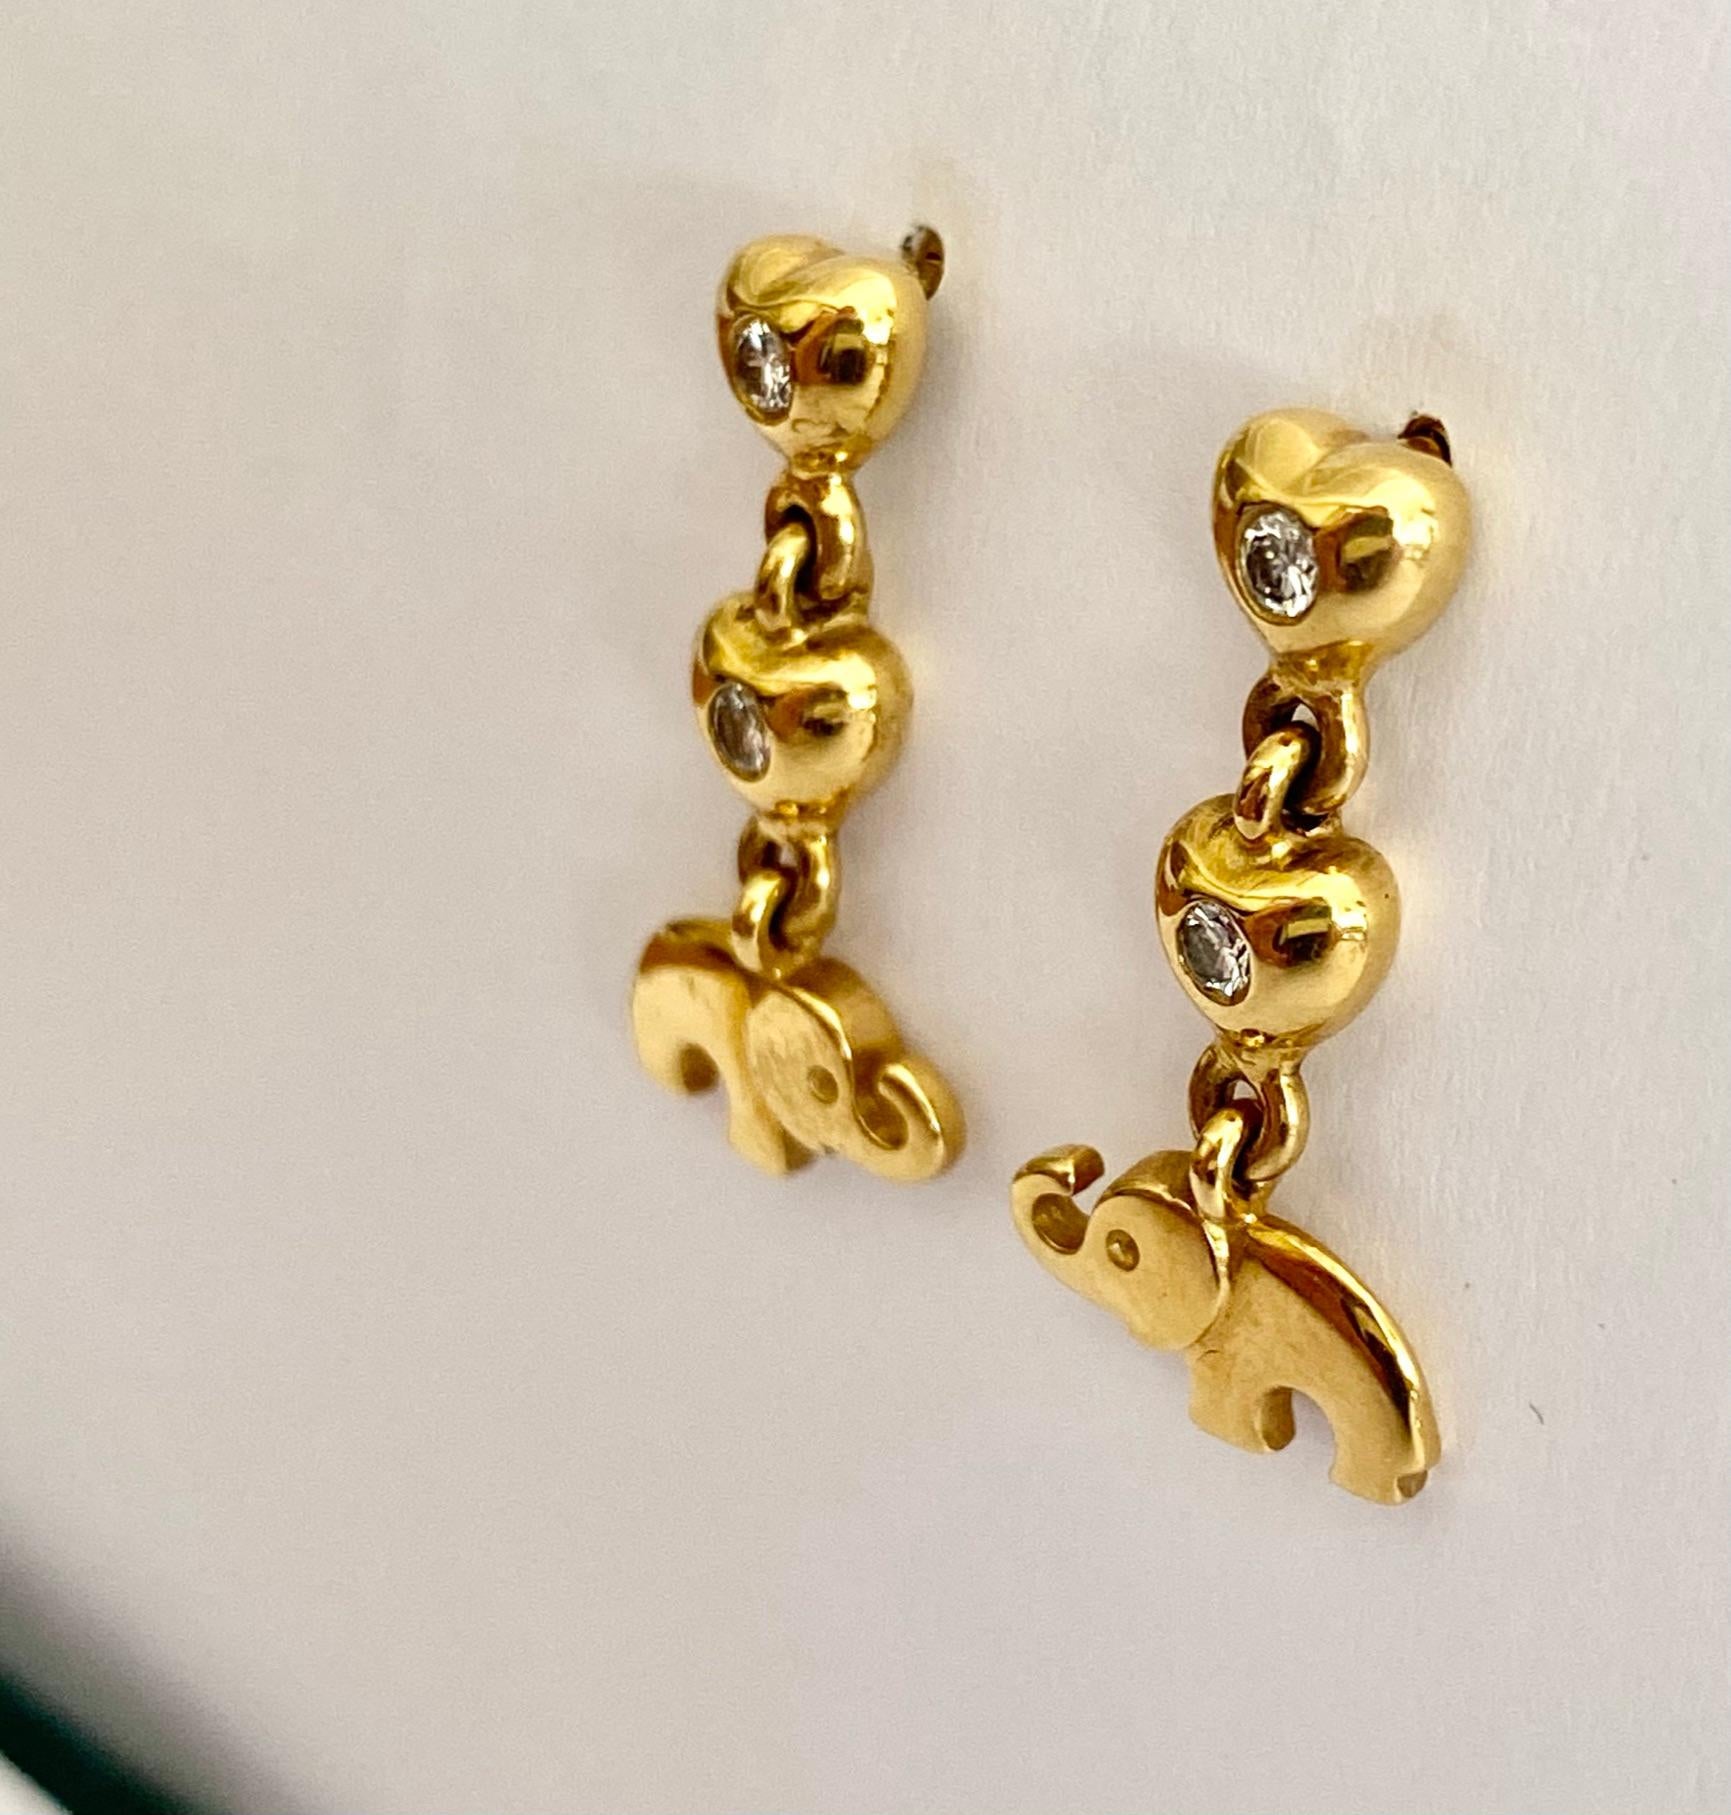 Ein (1) Paar Ohrringe aus 18 Karat Gelbgold, gestempelt 750 & C'est Laudier.
Hergestellt in Deutschland ca. 1995  
4 runde Diamanten im Brillantschliff = 0,22 ct VS - G 
Gewicht: 6,21 Gramm
Abmessungen:   22 x 10 x= 2 mm
Neu Altbestand.